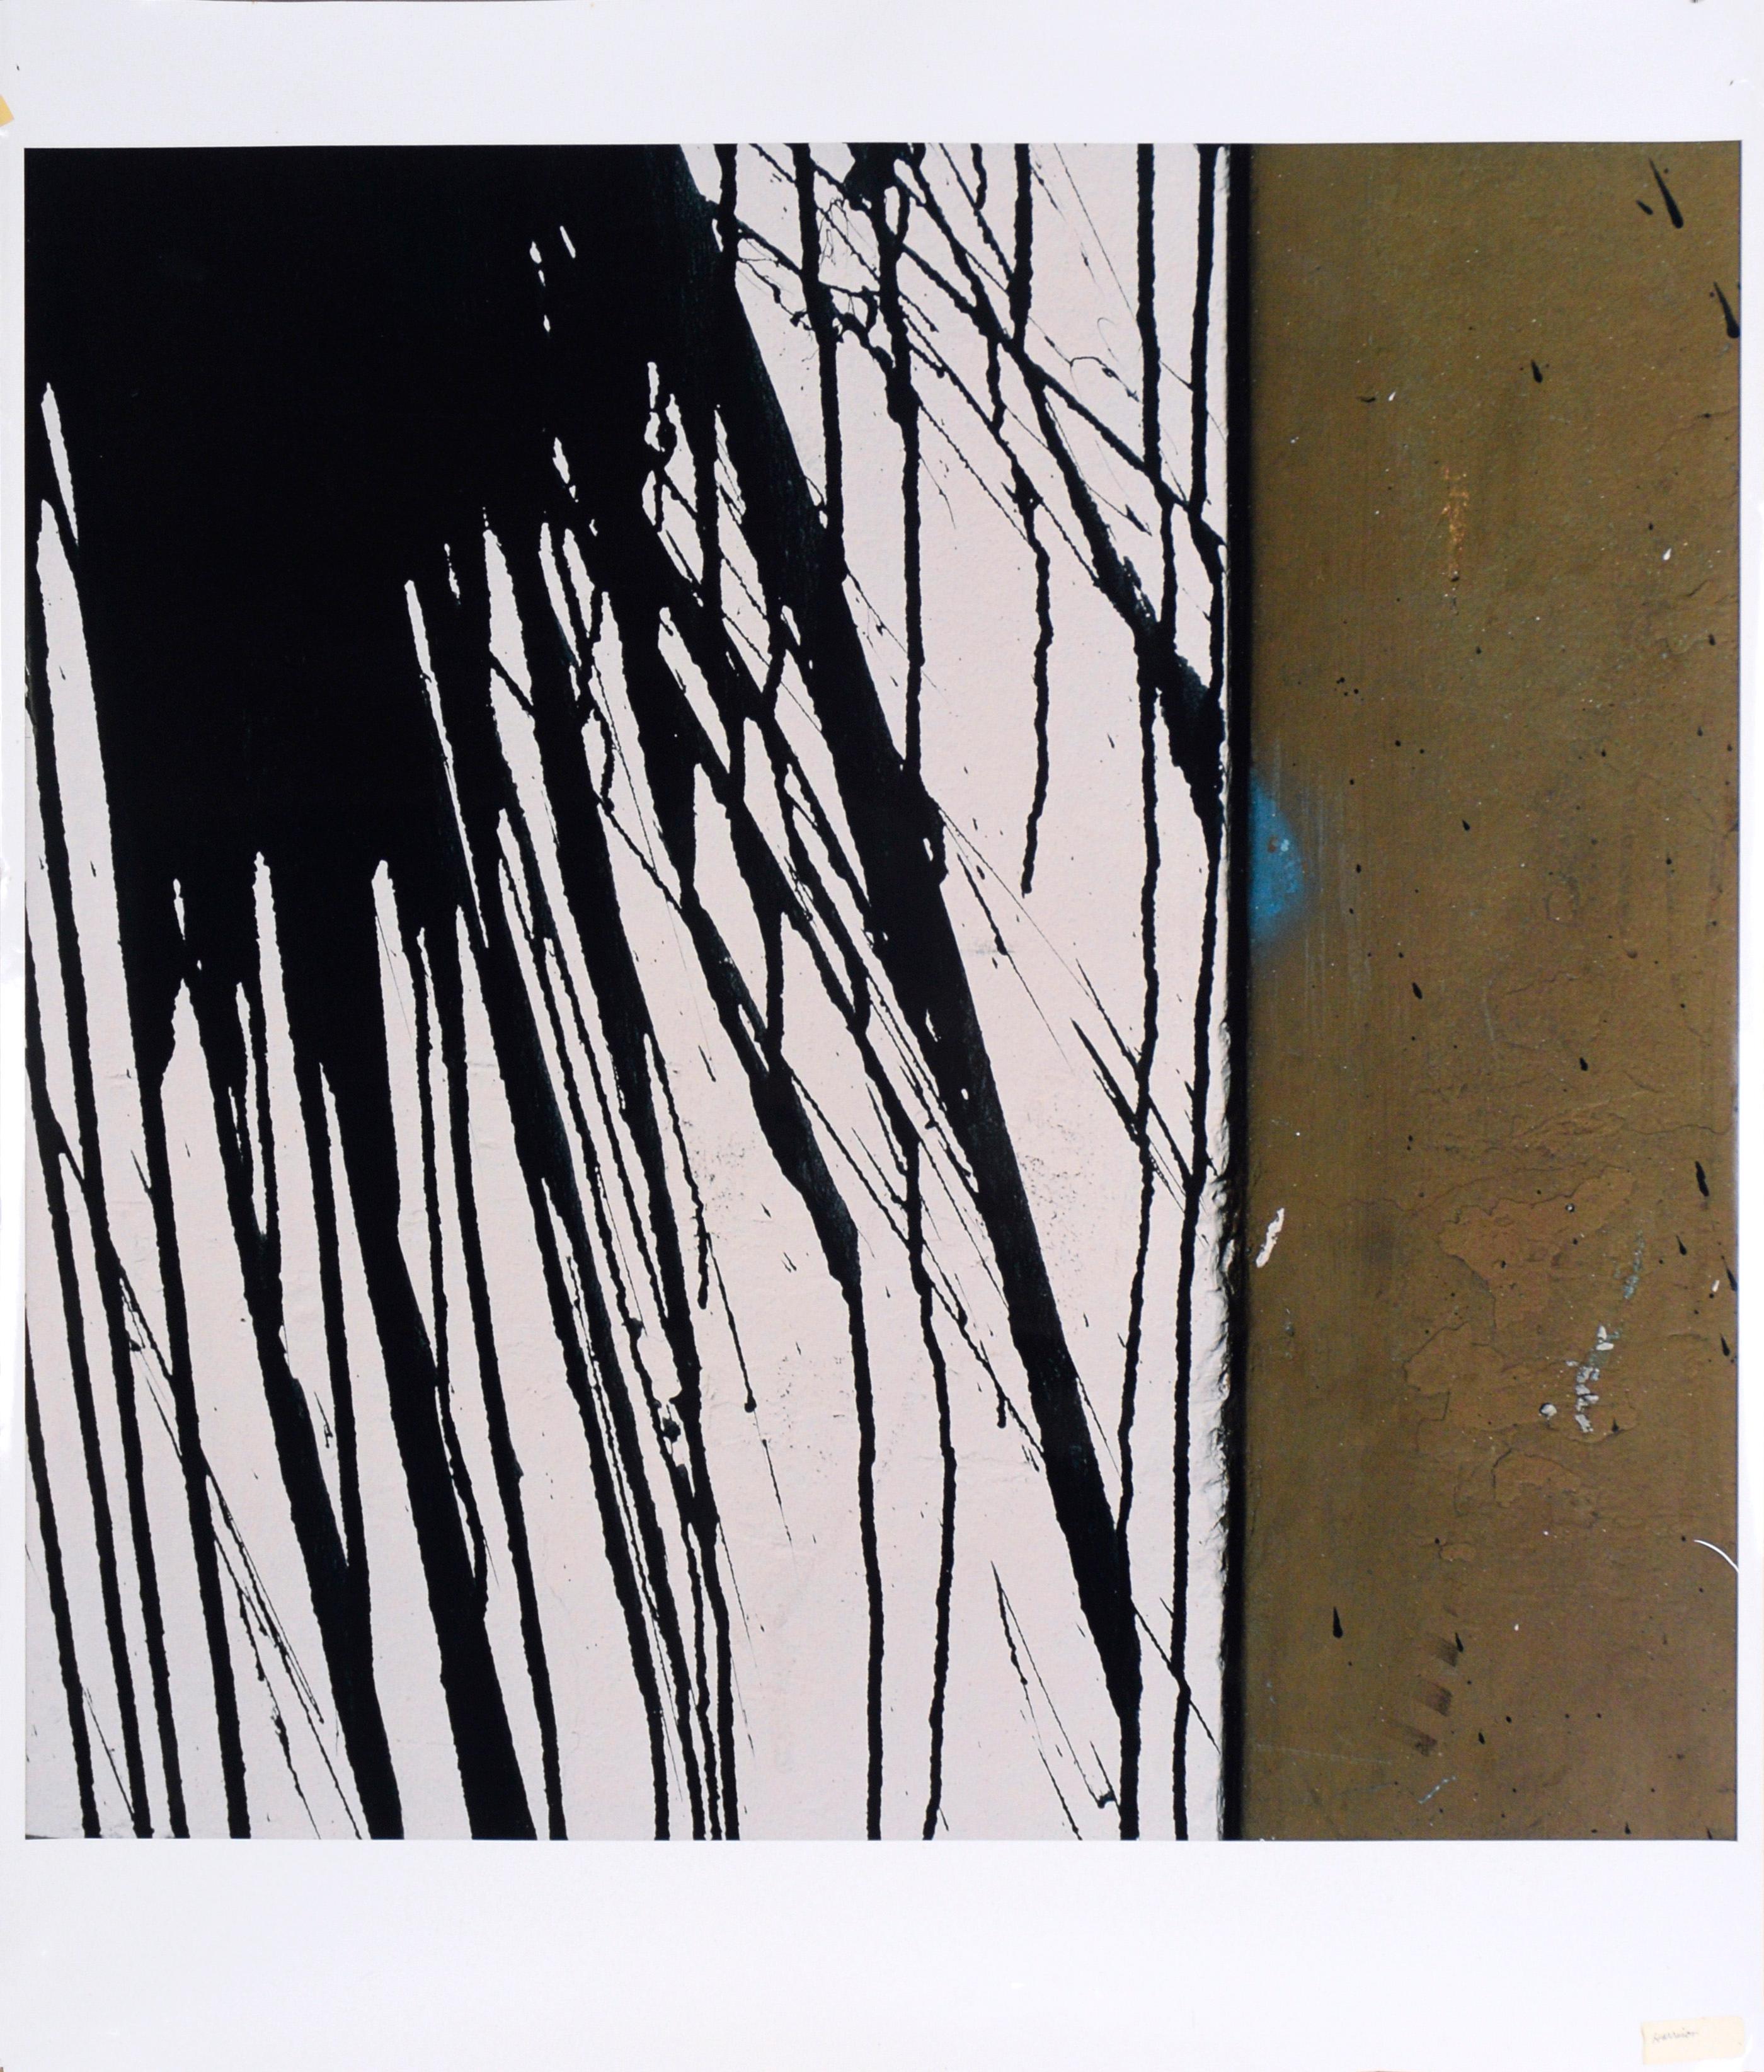 Black Paint Splatters - Large Scale Textural Photograph